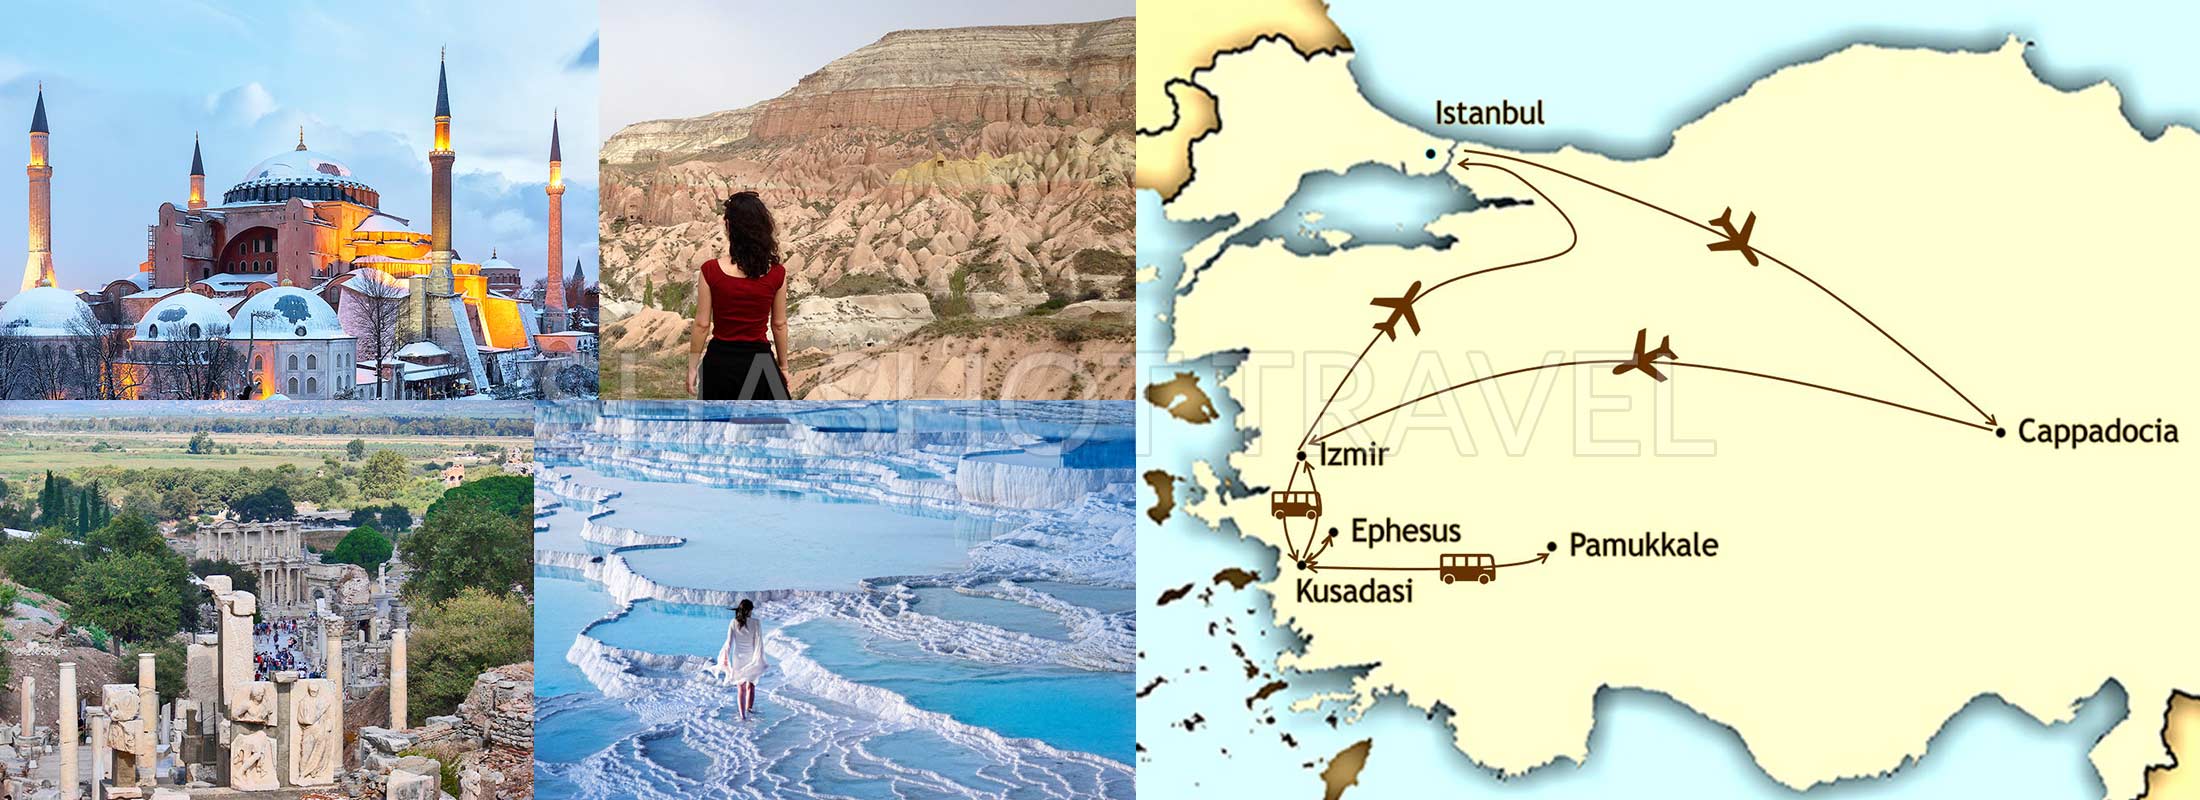 10-days-turkey-package-tours-istanbul-cappadocia-ephesus-pamukkale-hierapolis-by-flight